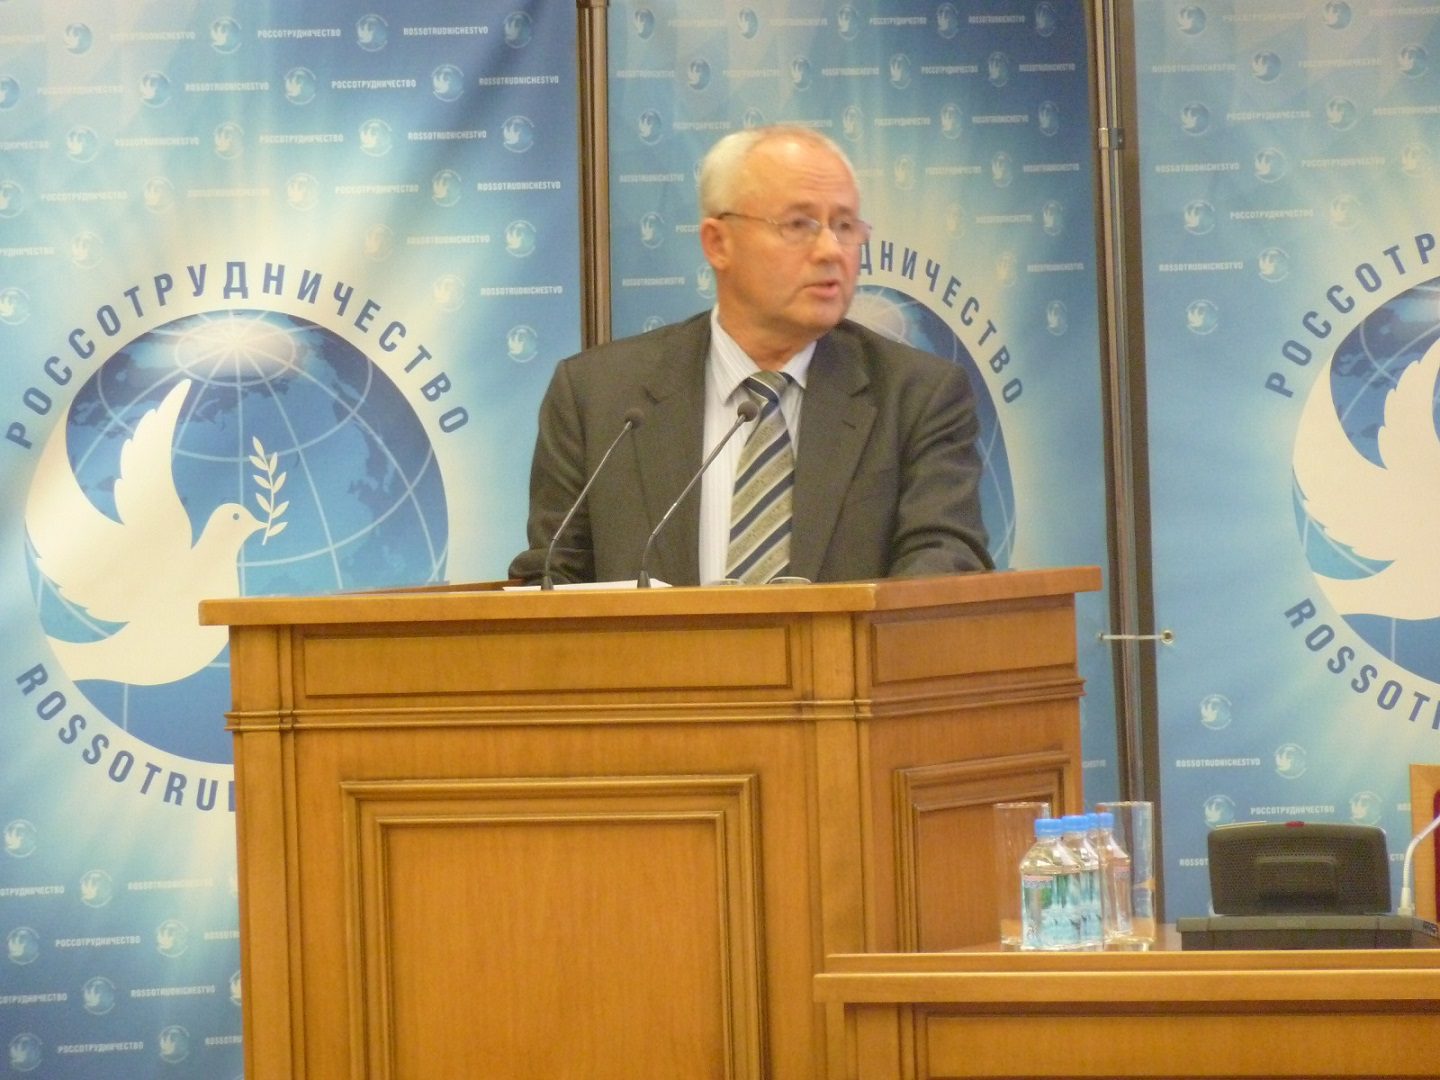 Руководитель представительства Россотрудничества в Китае Виктор Коннов на трибуне совещания